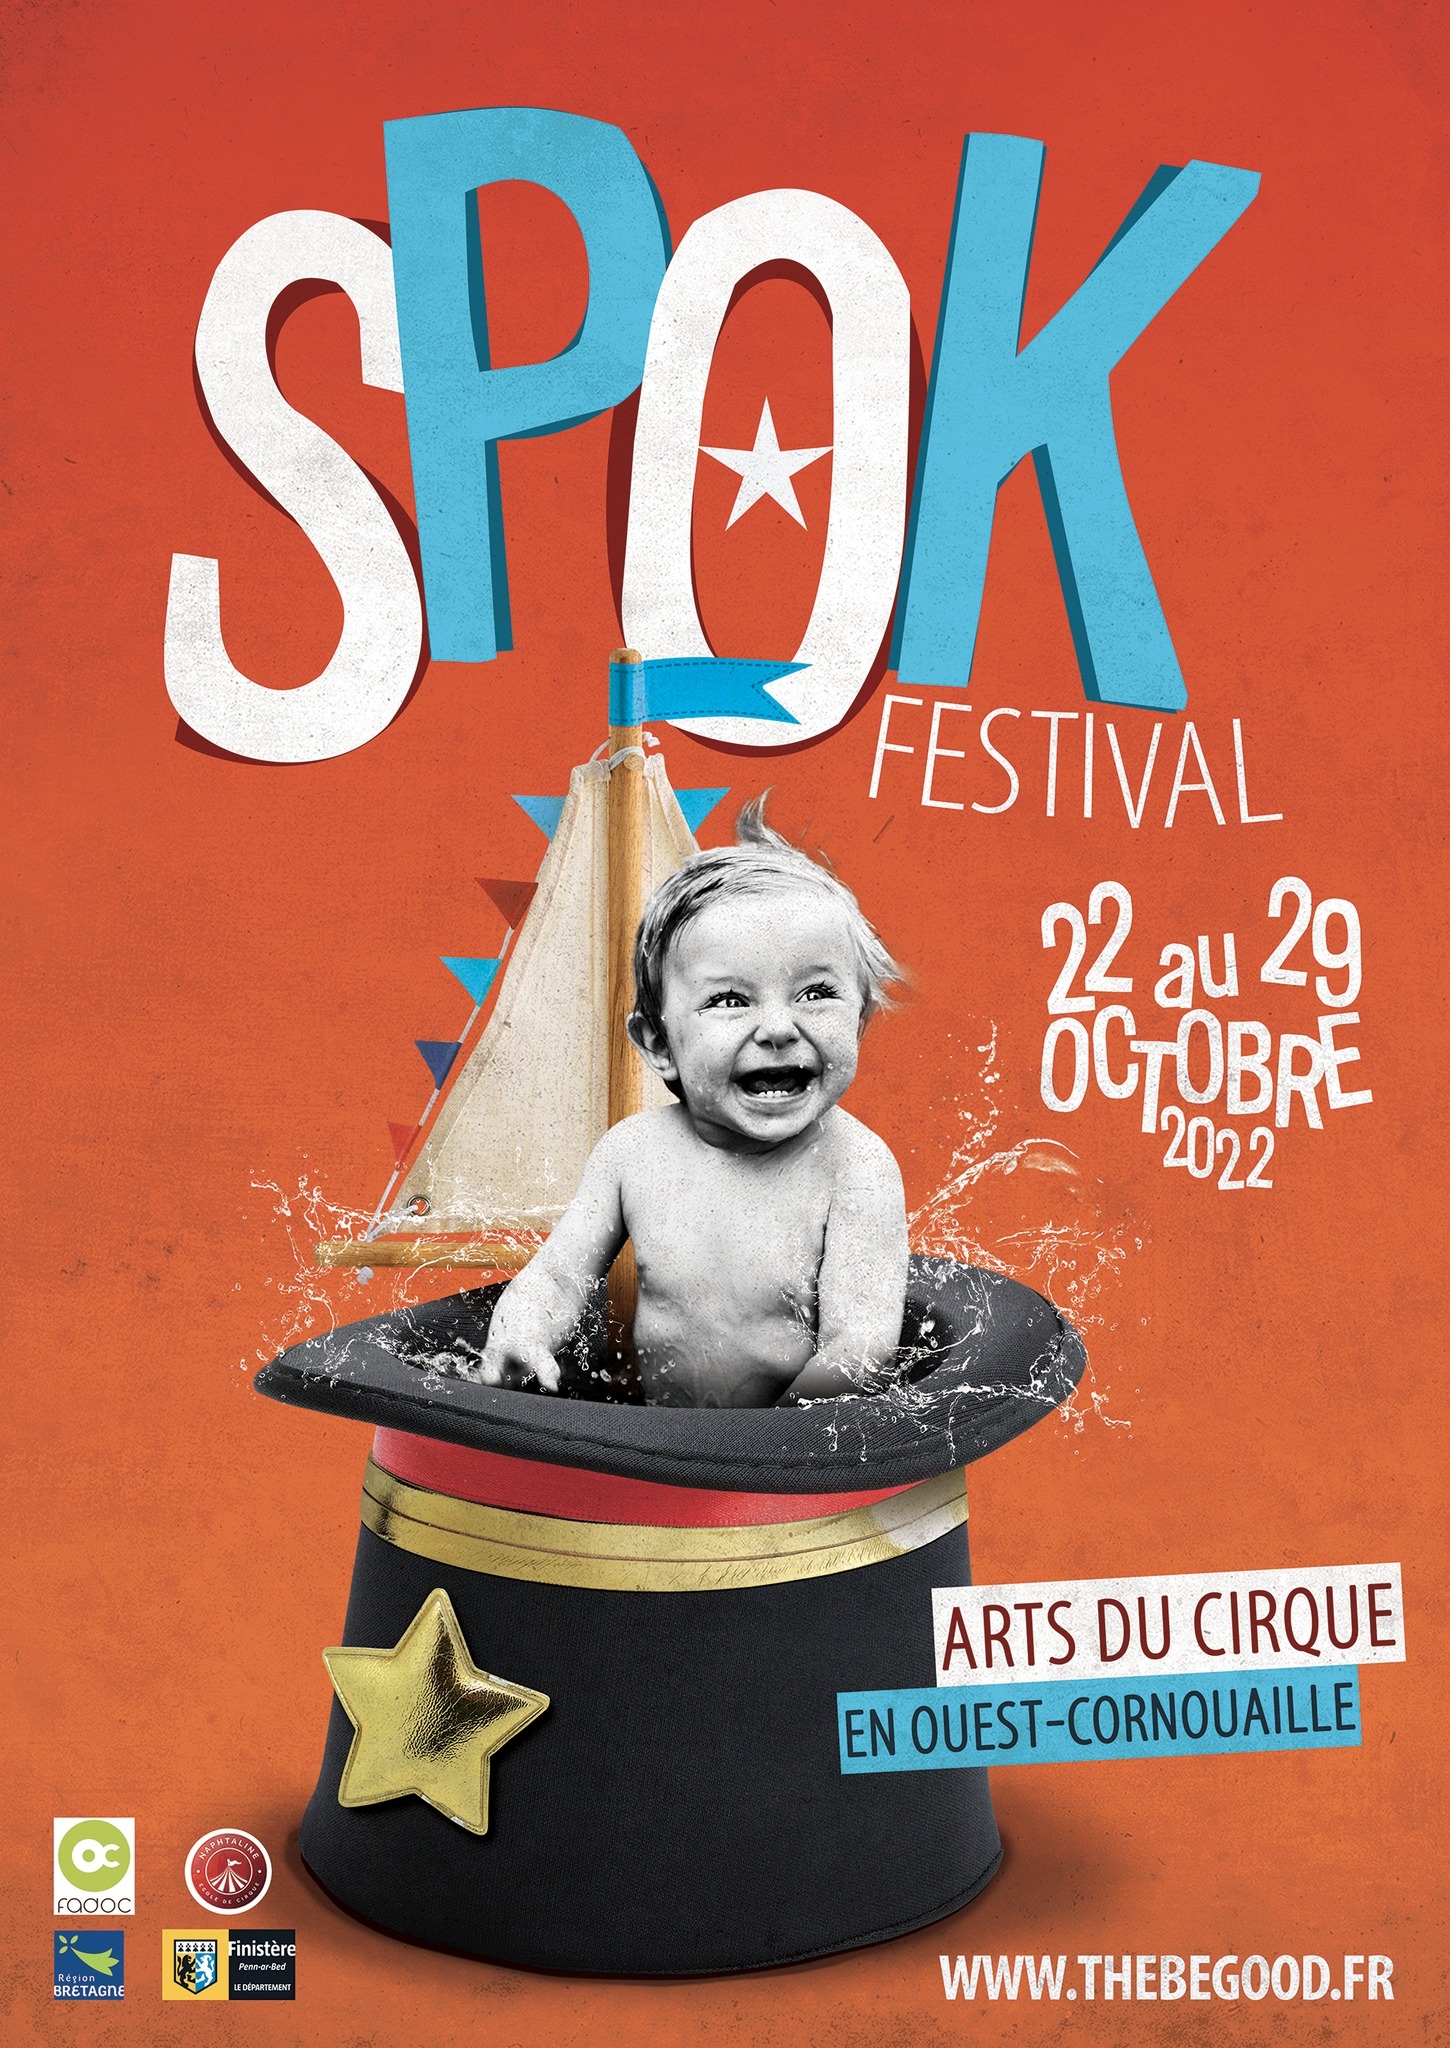 Spok Festival - "Surcouf"